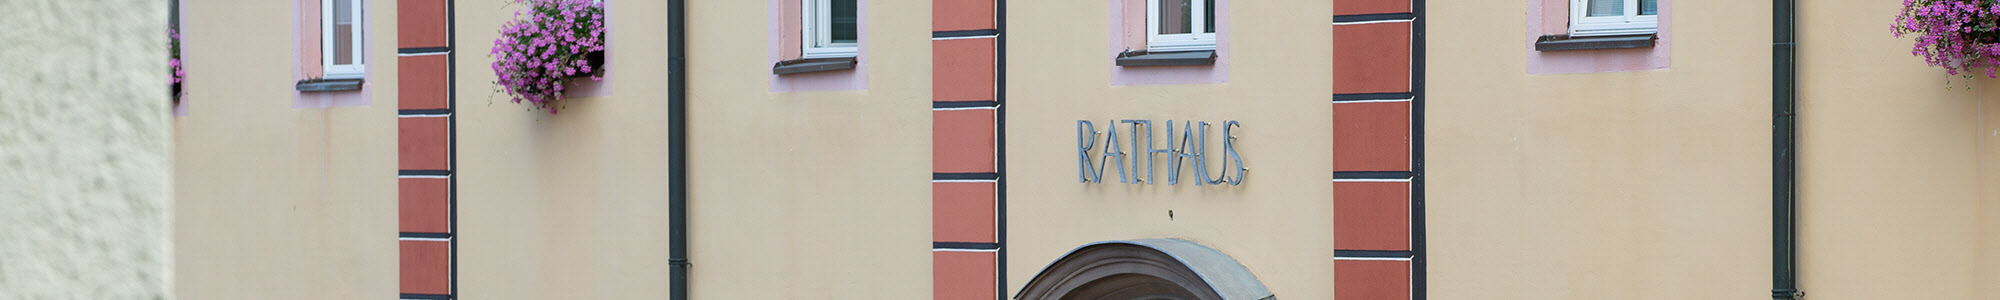 Rathaus-Fenster